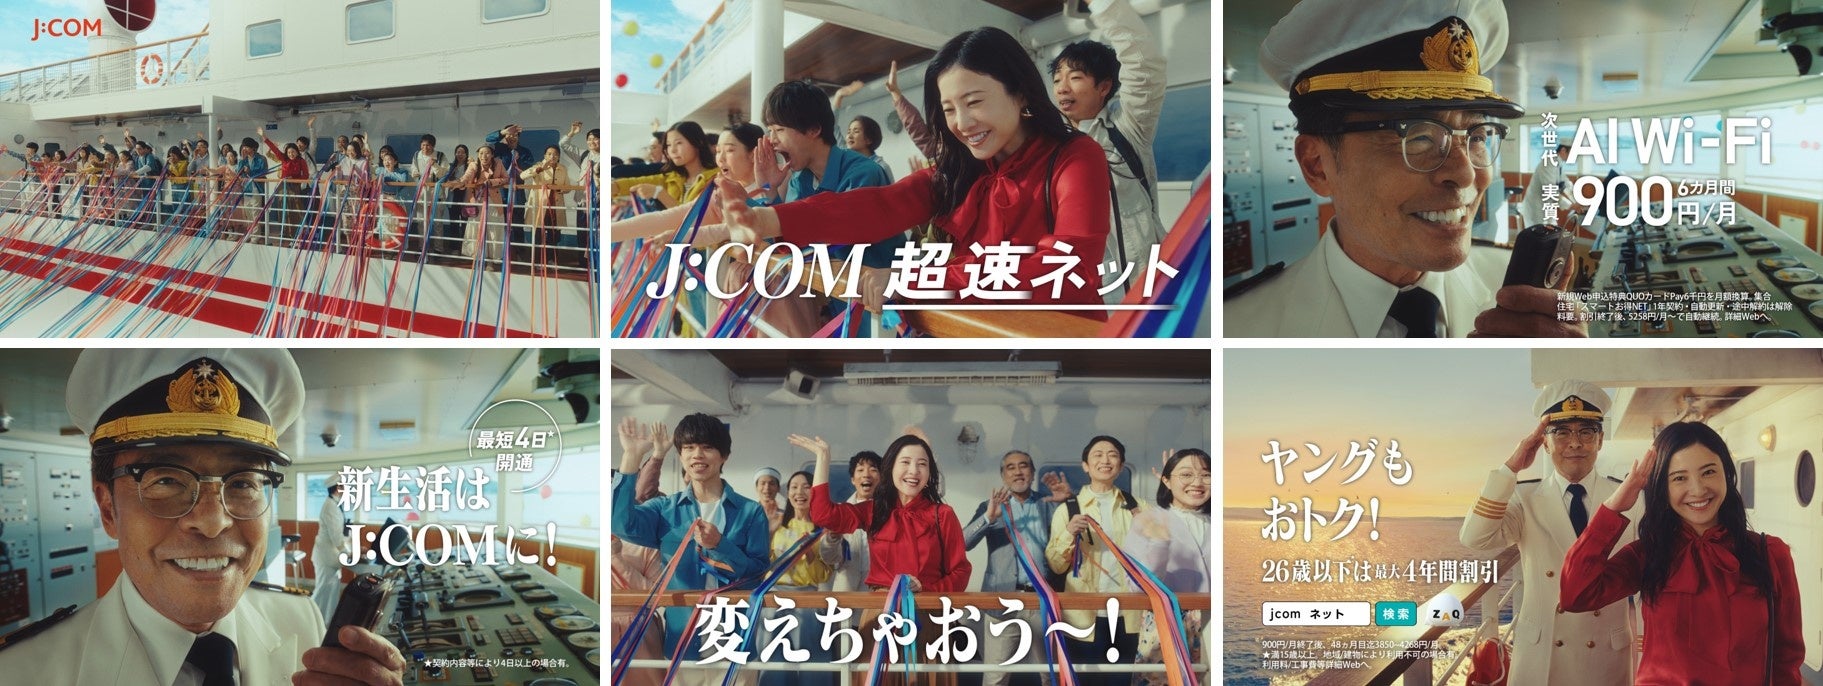 【JCOM】吉高由里子さん、光石研さん出演の新テレビCM「船出篇」を放映開始